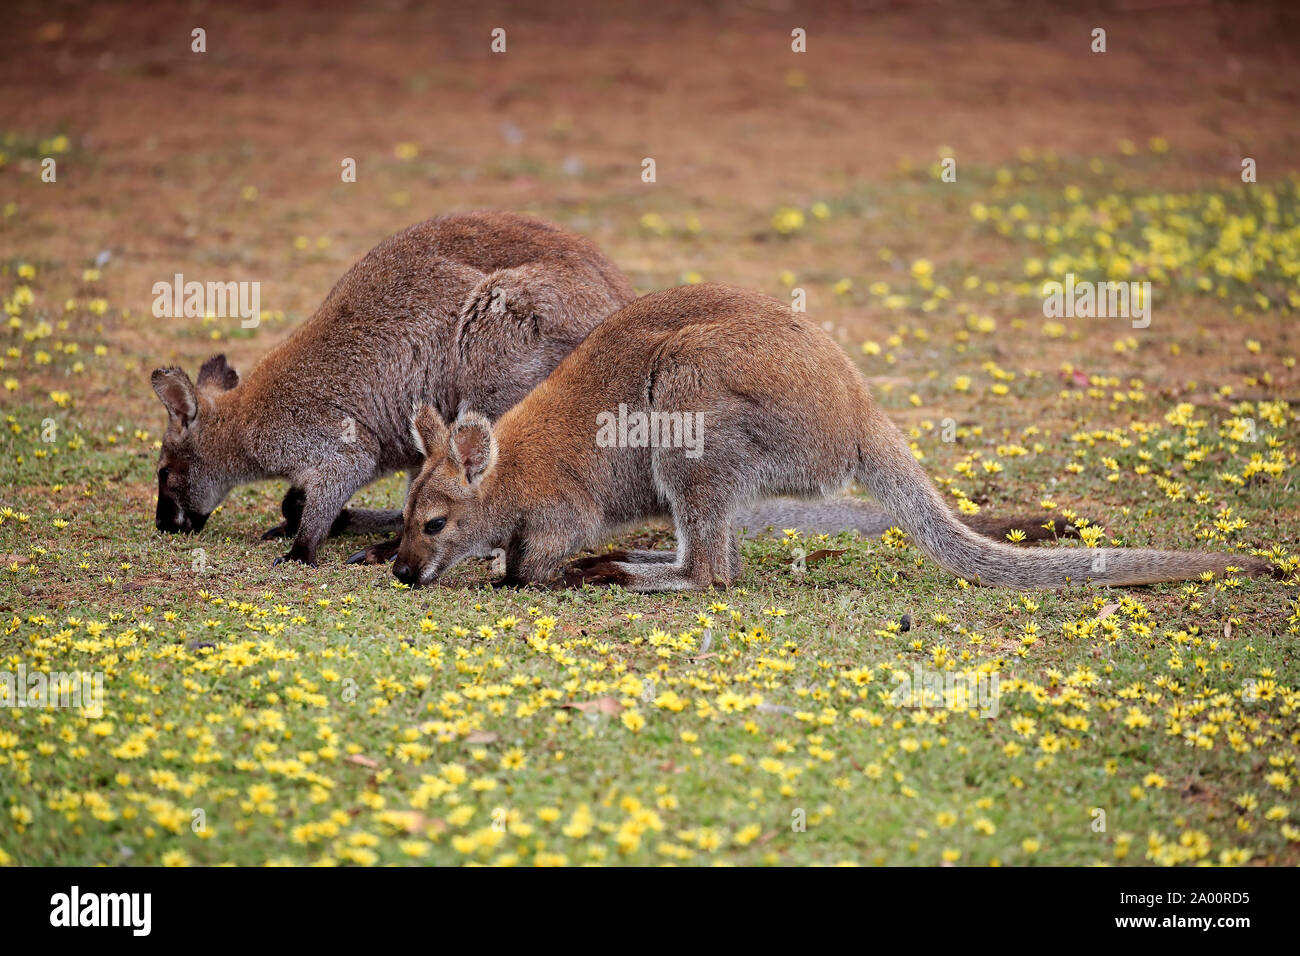 Wallaby de Bennett, deux adultes se nourrissant dans un pré, Cuddly Creek, Australie du Sud, Australie, (Macropus rufogriseus) Banque D'Images